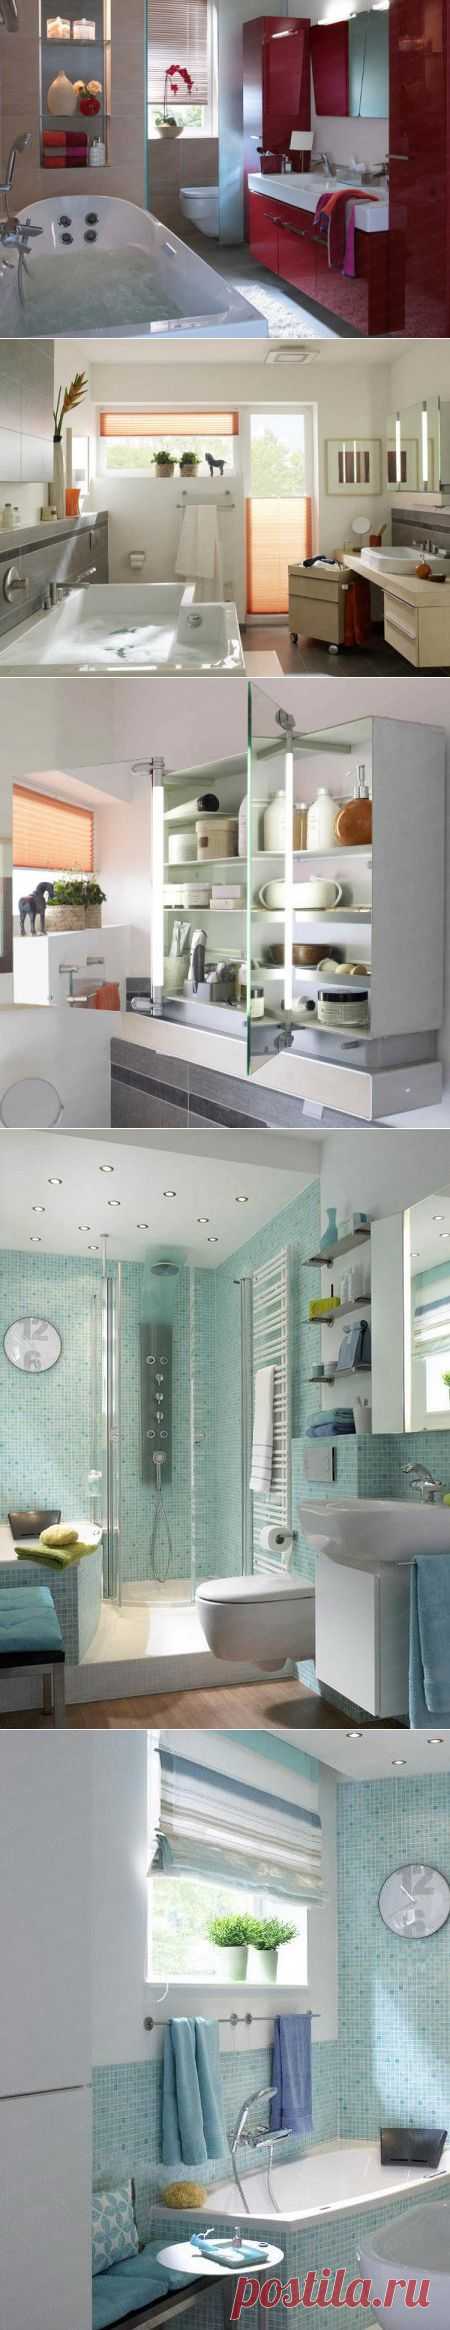 Конструктивные решения в планировке ванной комнаты